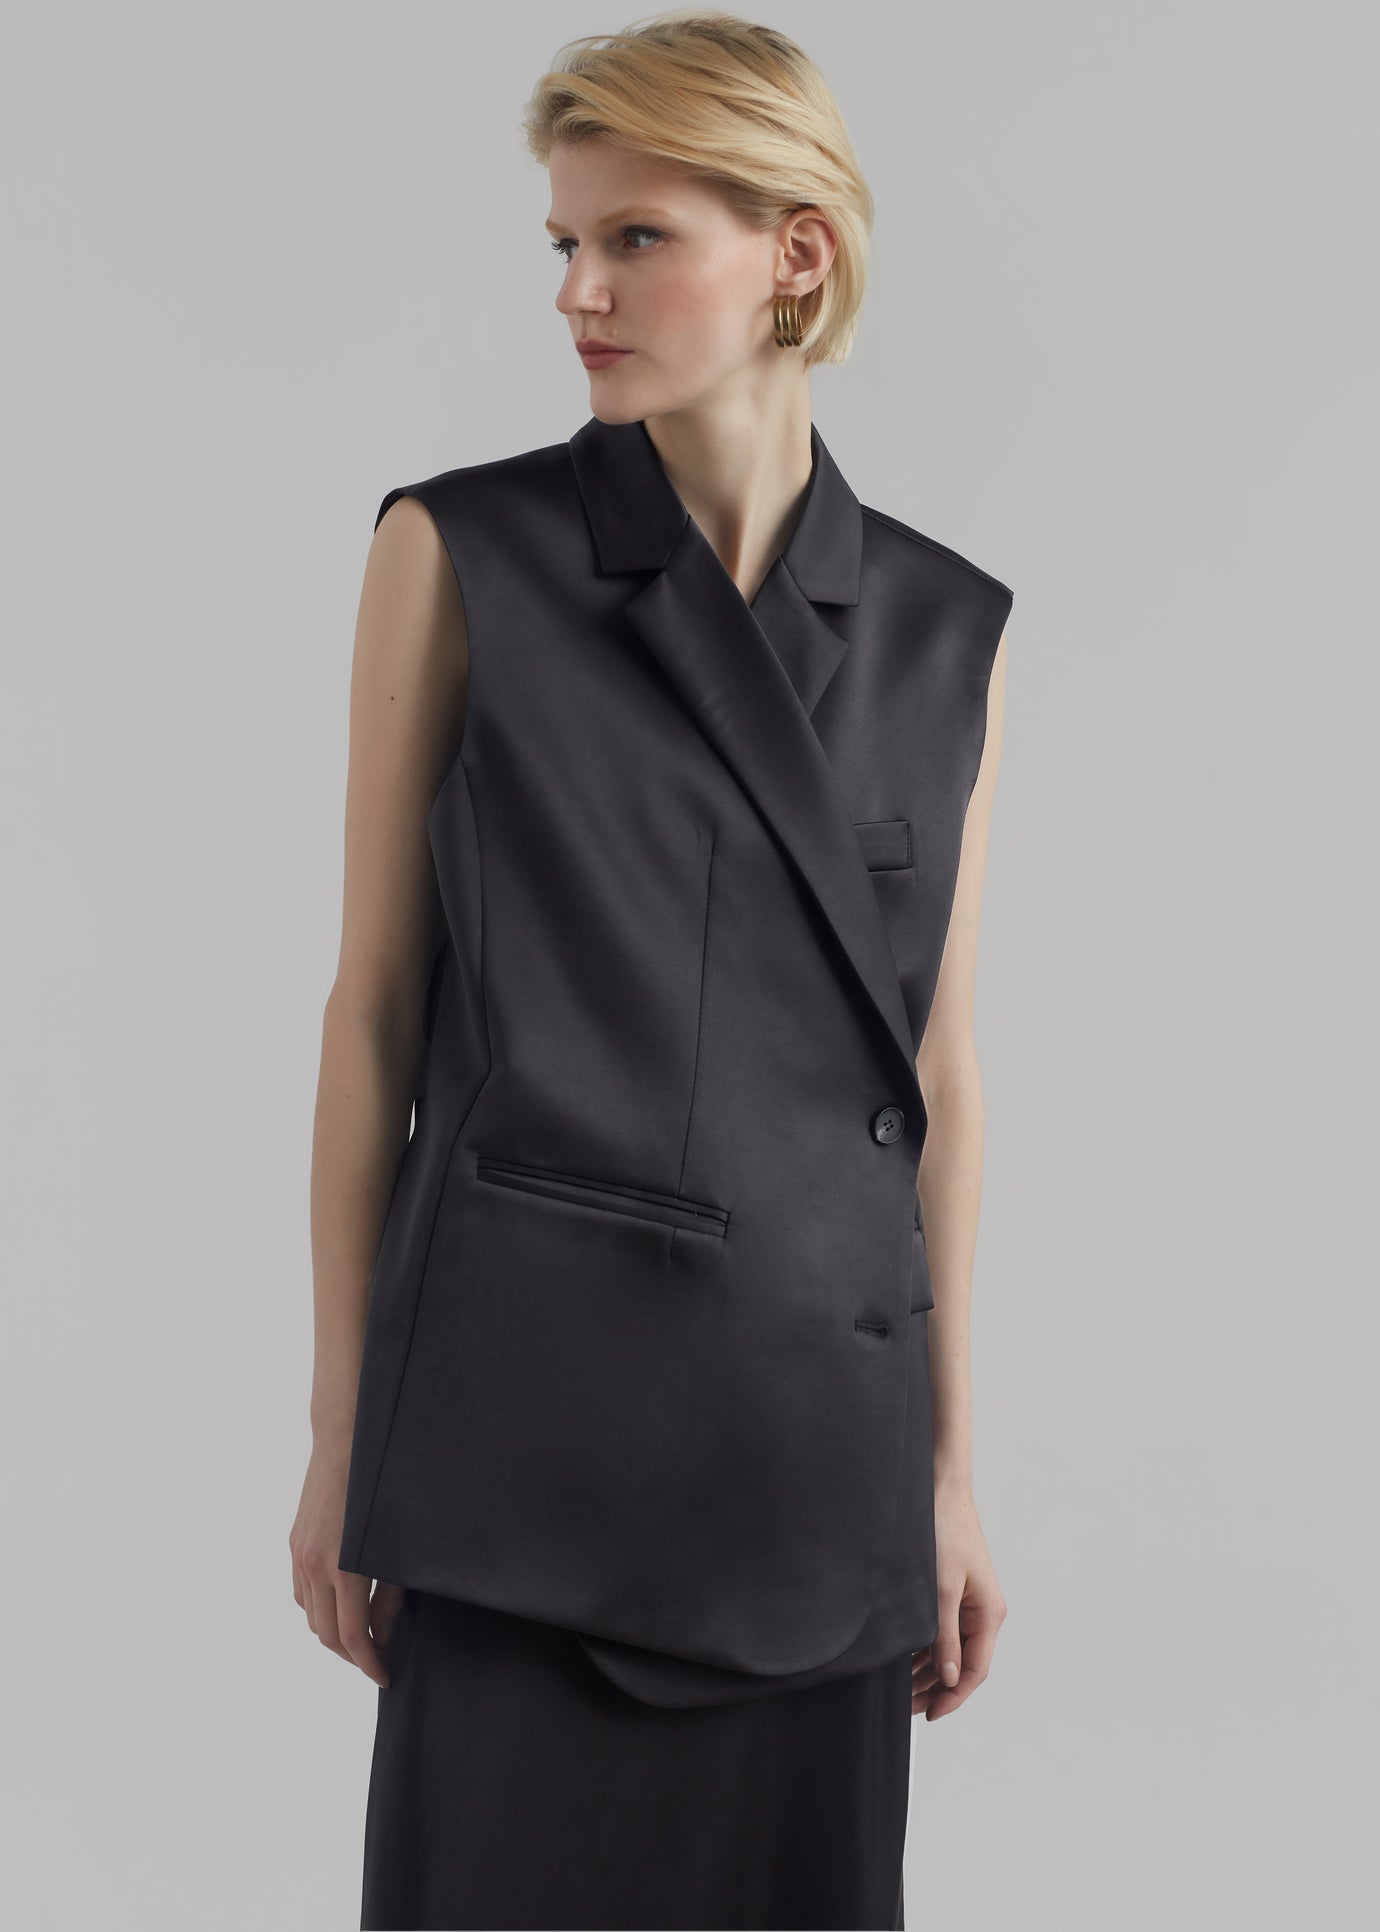 Women Blazers Waistcoats - Buy Women Blazers Waistcoats online in